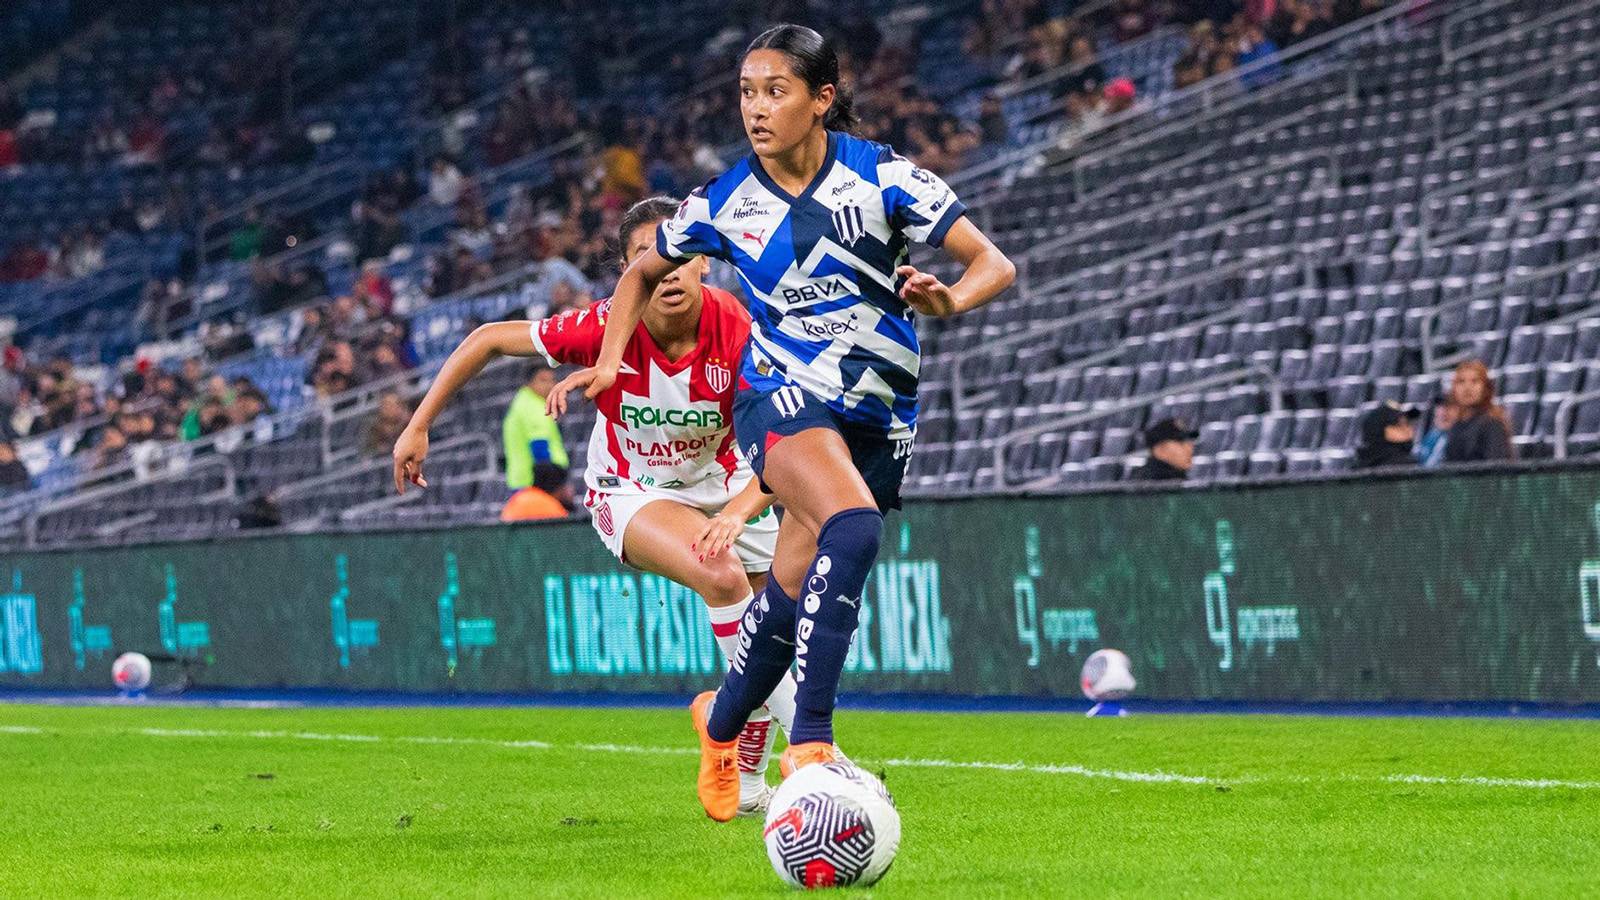 Soccer player Juana Plata kicking ball during pro game